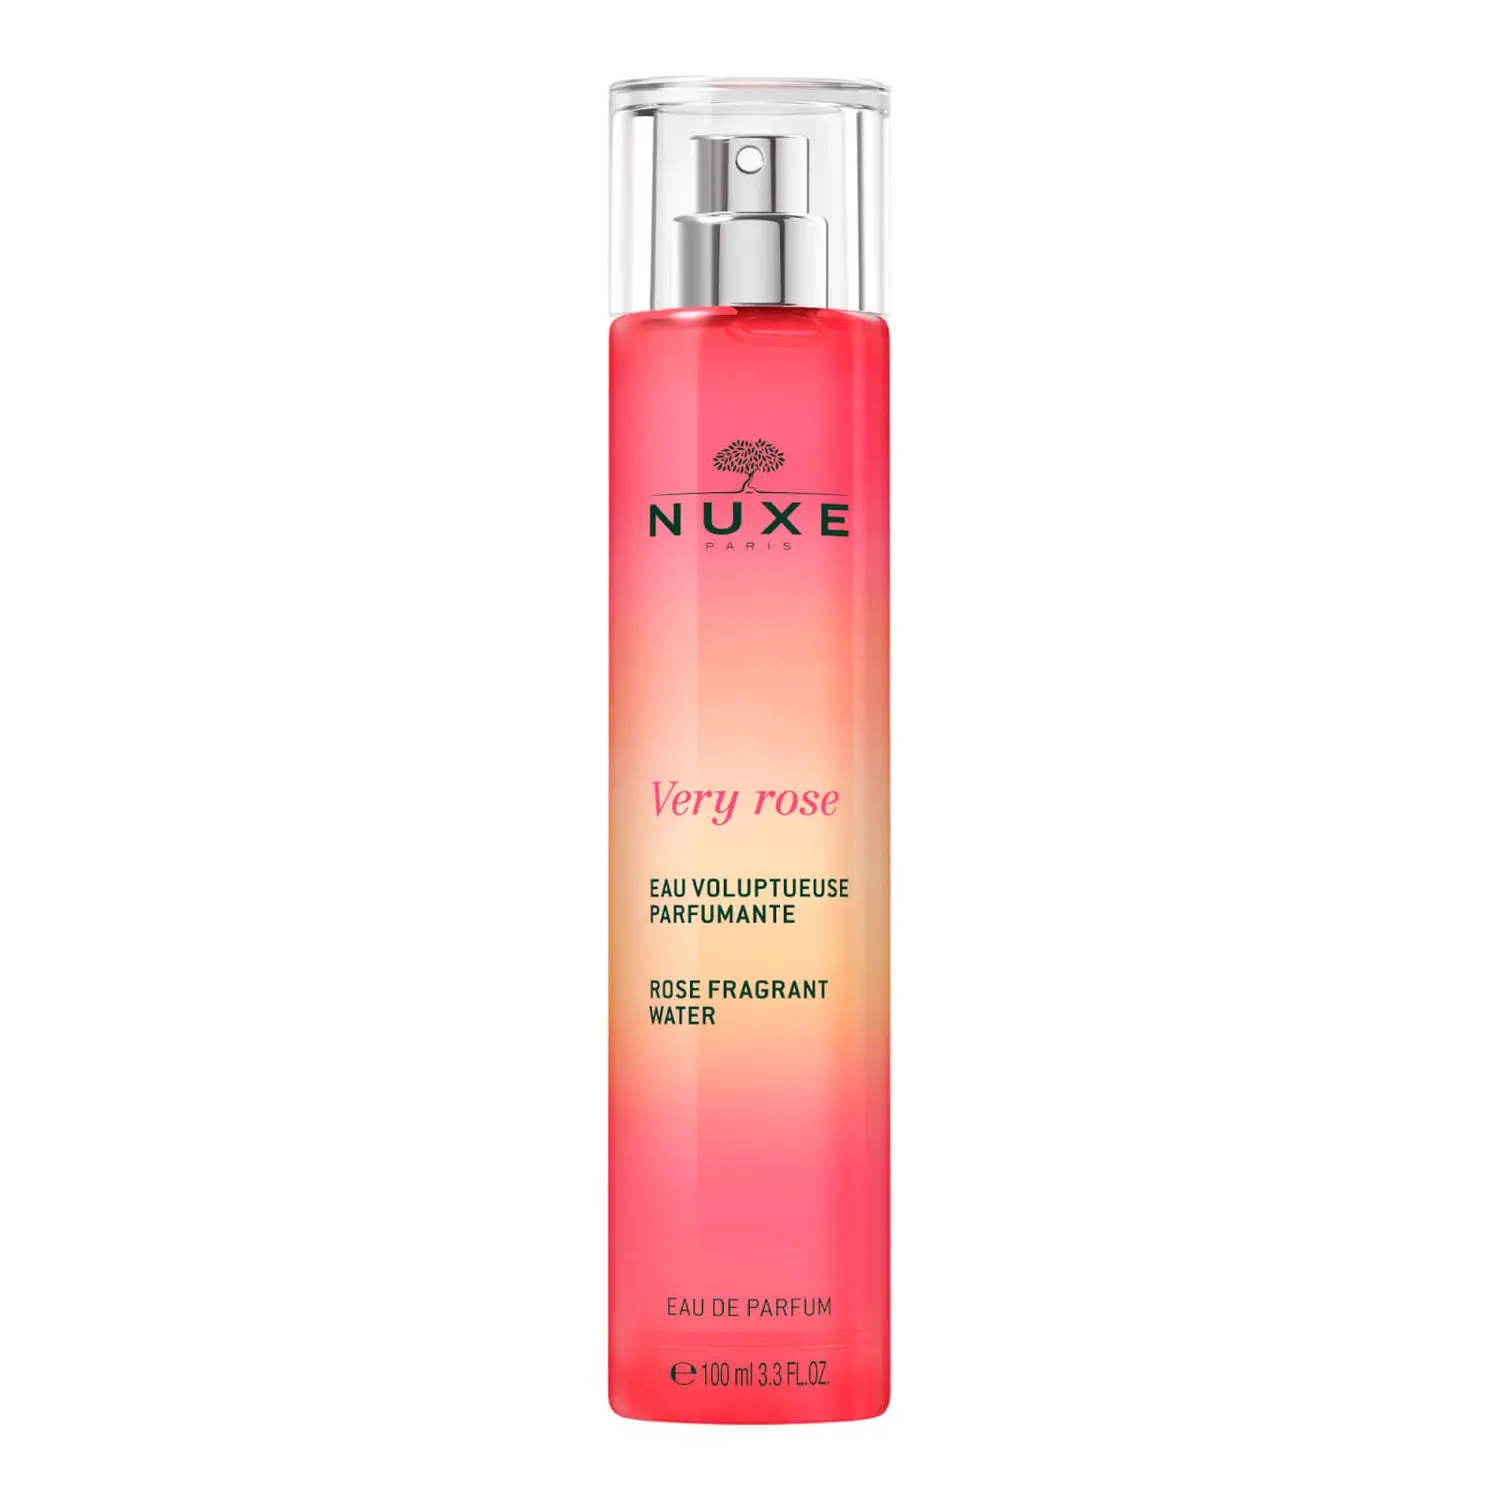 Very Rose Eau voluptueuse parfumante Nuxe - spray de 100ml